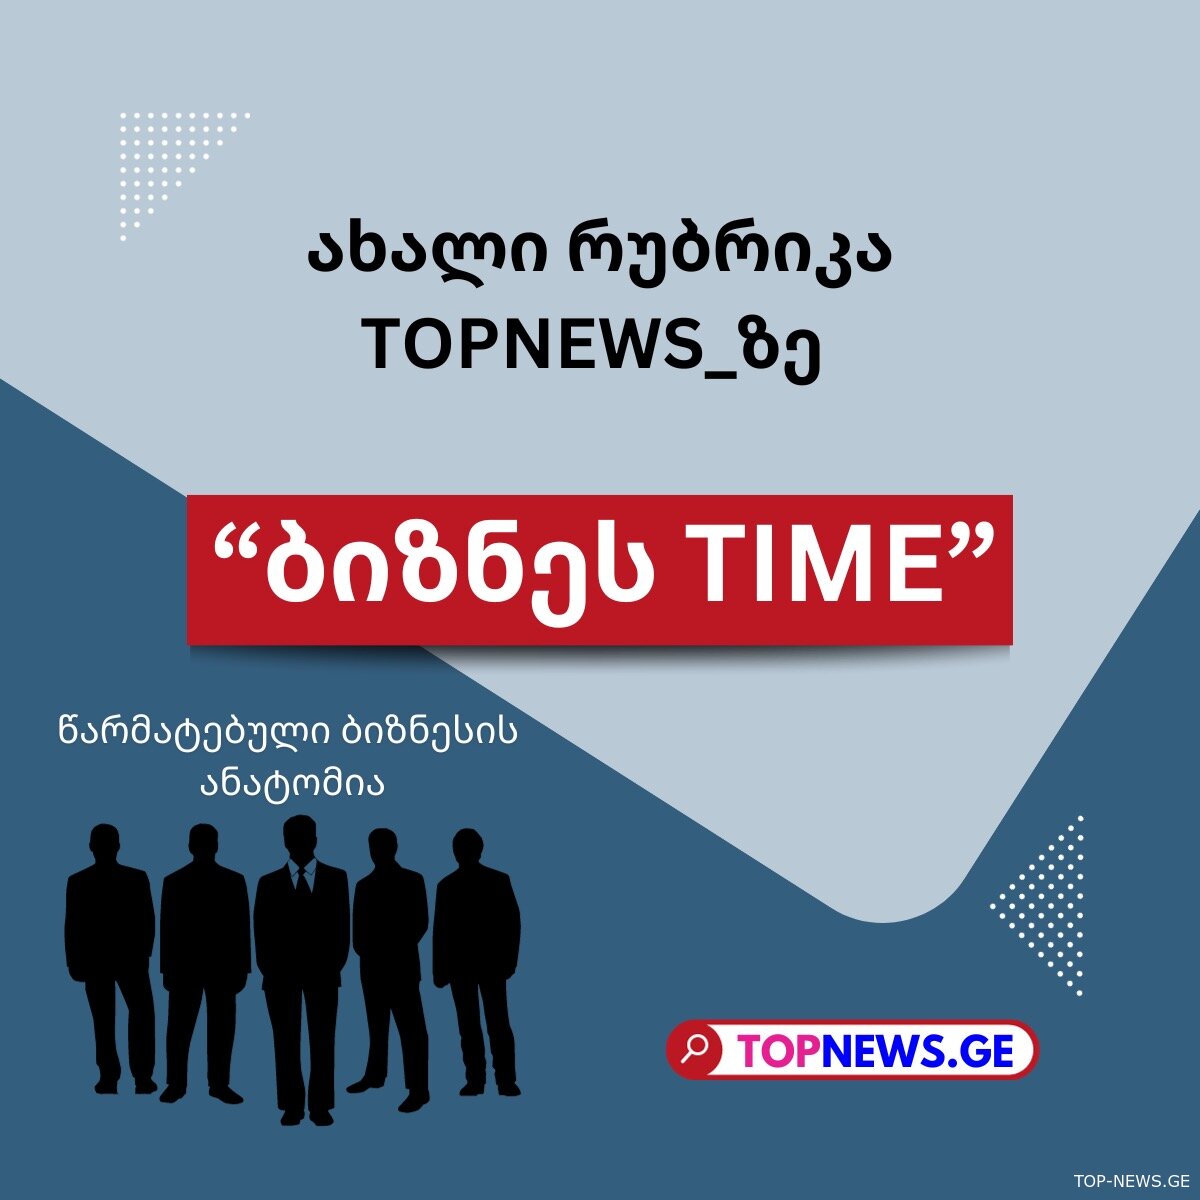 Topnews.ge-ს ახალი პროექტი ბიზნესის მხარდასაჭერად: "ბიზნეს Time"-წარმატებული ბიზნესის ანატომია